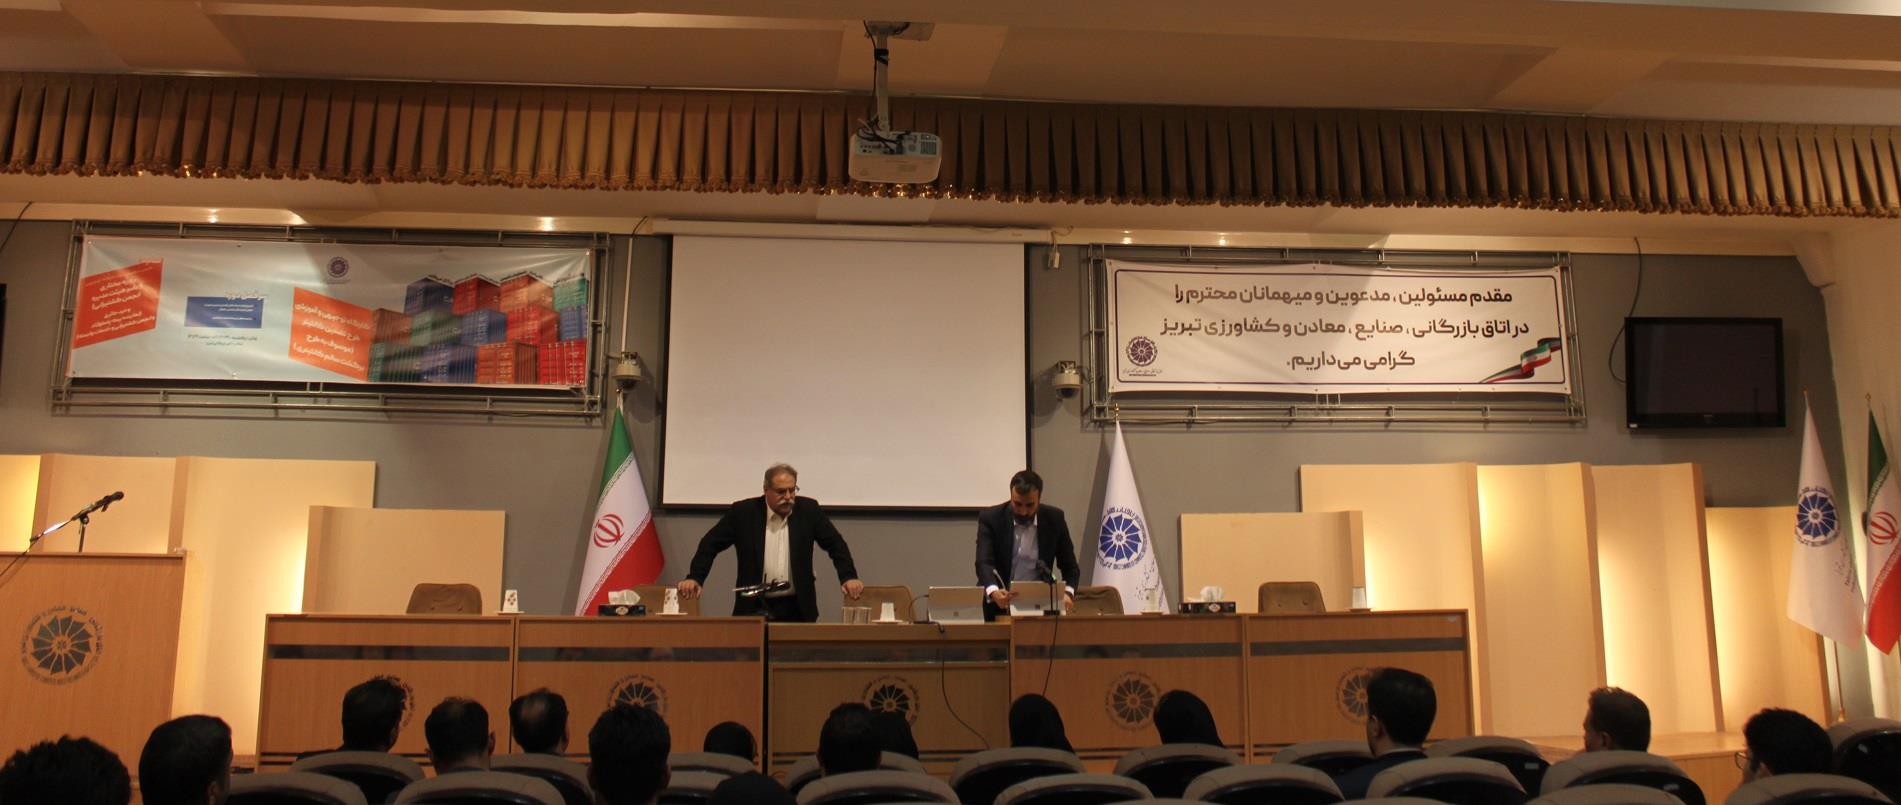 کارگاه توجیهی و آموزشی طرح تضمین کانتینر در اتاق بازرگانی تبریز برگزار شد